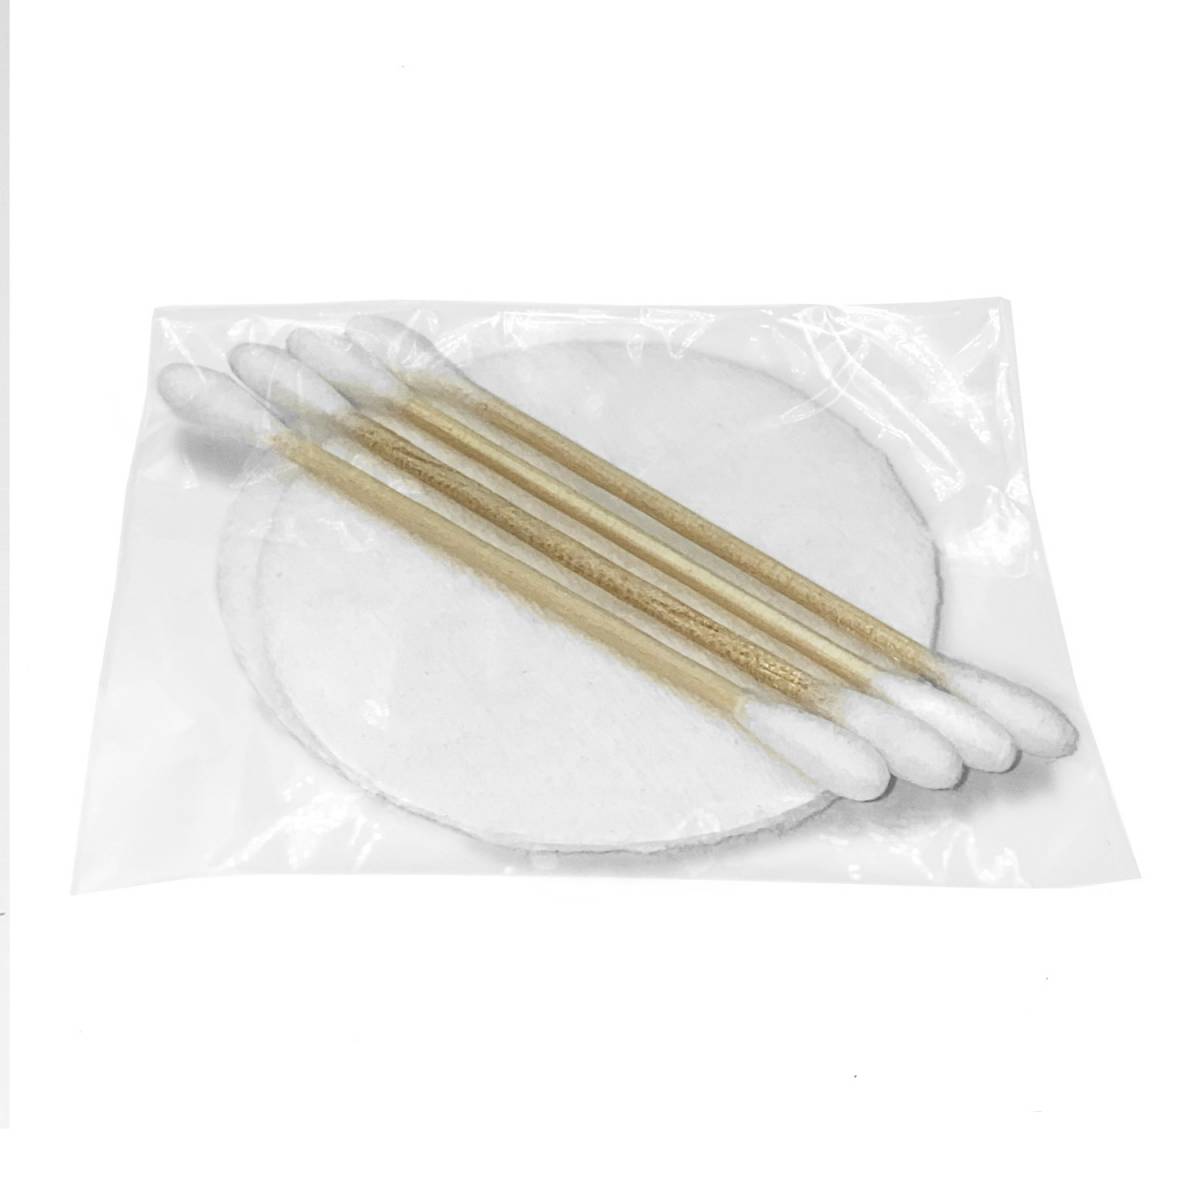 Косметический набор с бамбуковыми палочками для гостиниц в п/е упаковке VKB4/2 HSG